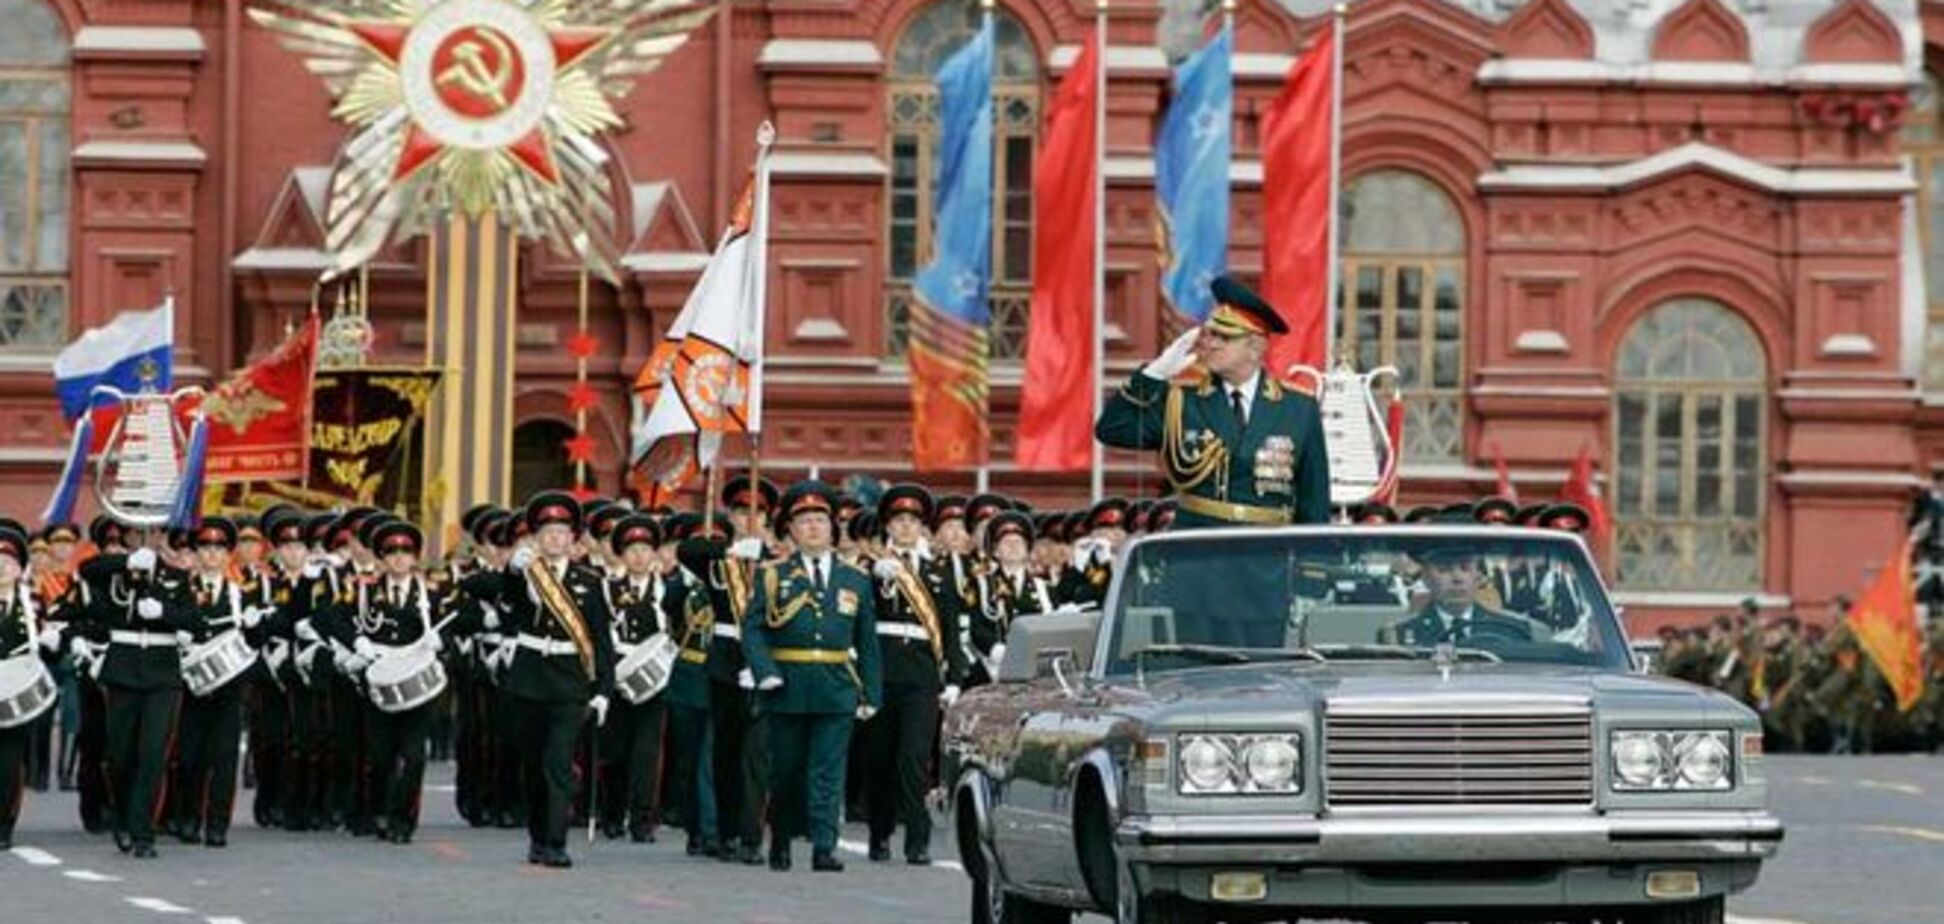 Даже гранит не выдержал: парад 'убил' брусчатку в Москве